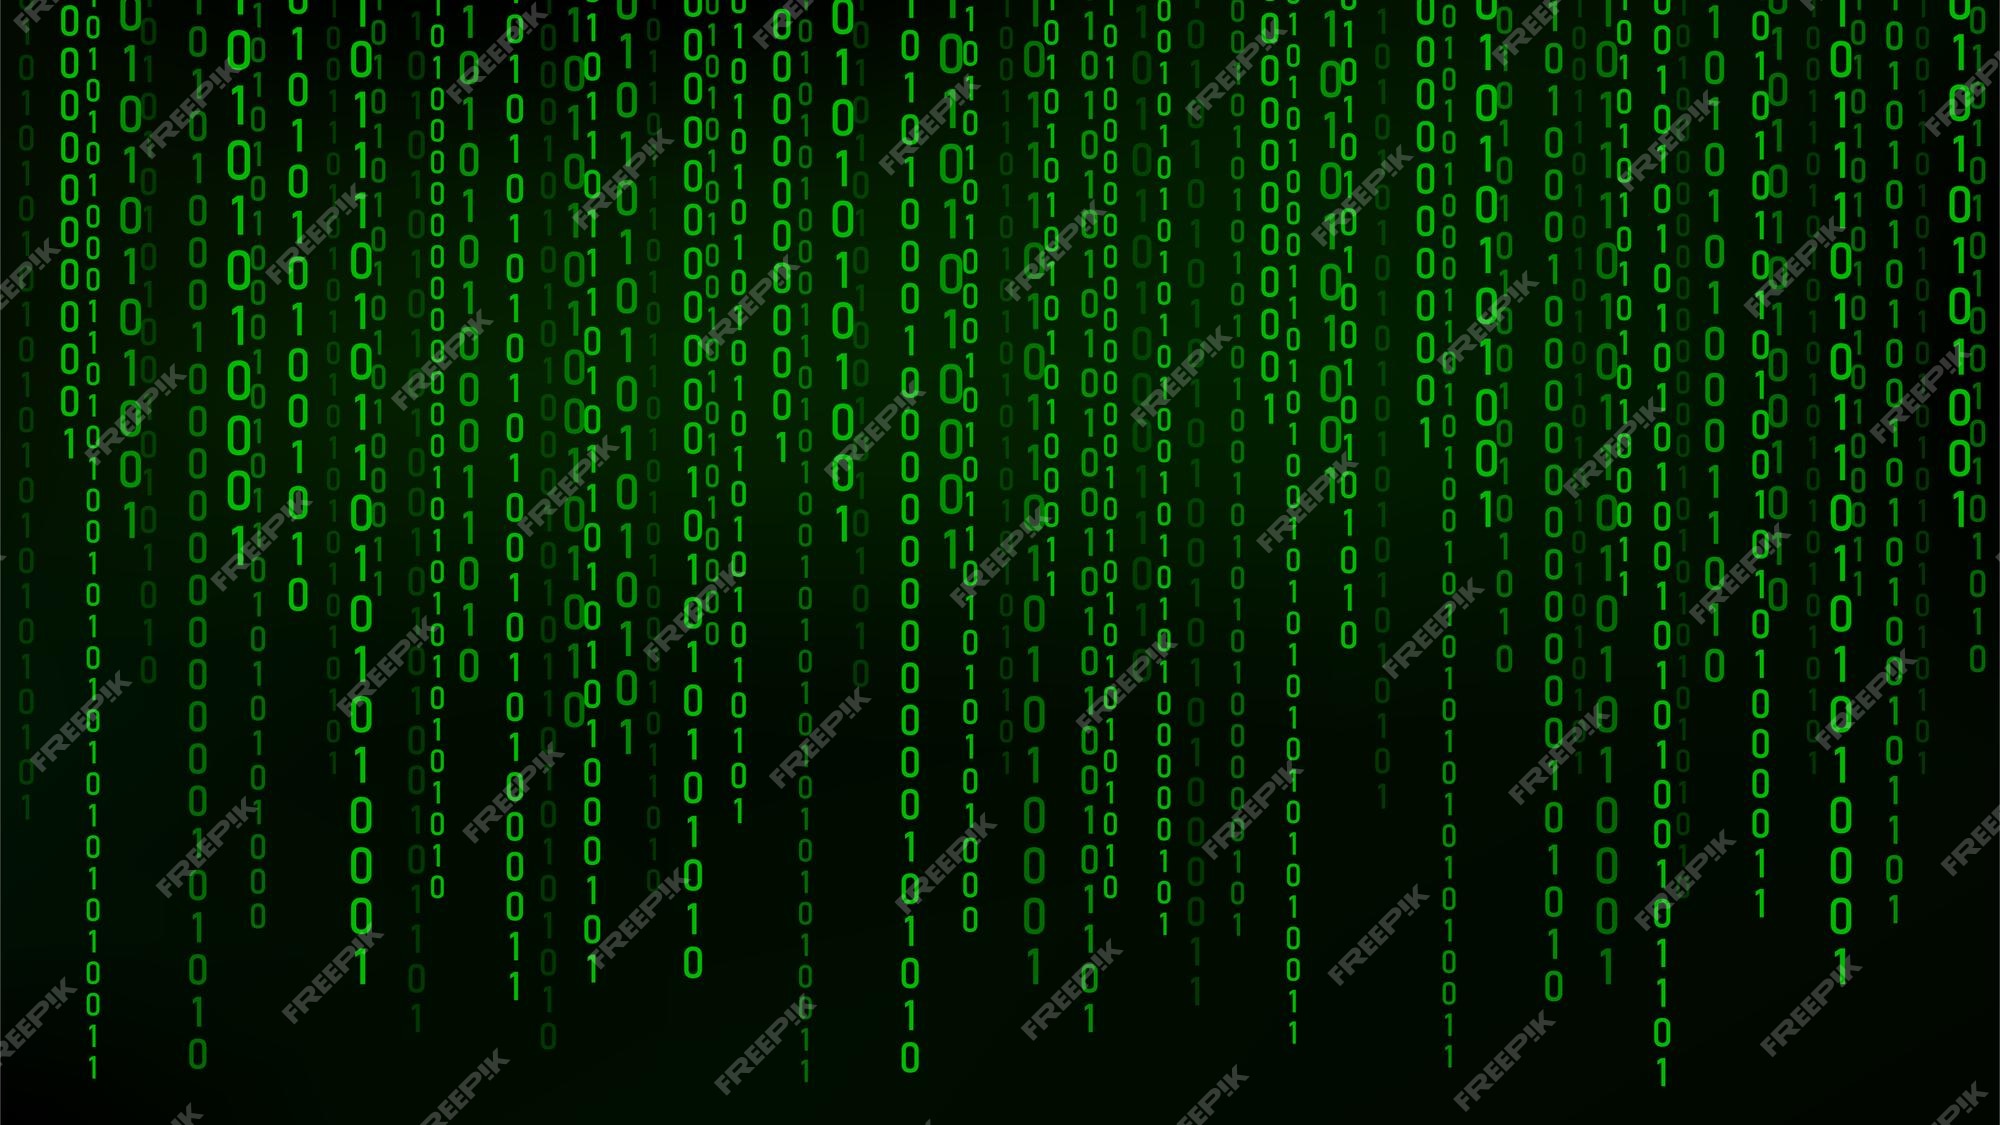 Hình ảnh nền hacker màu xanh sẽ đưa bạn vào thế giới của những người tài ba trong lĩnh vực công nghệ thông tin. Hãy cùng khám phá những bí mật được ẩn giấu trong hình ảnh này.